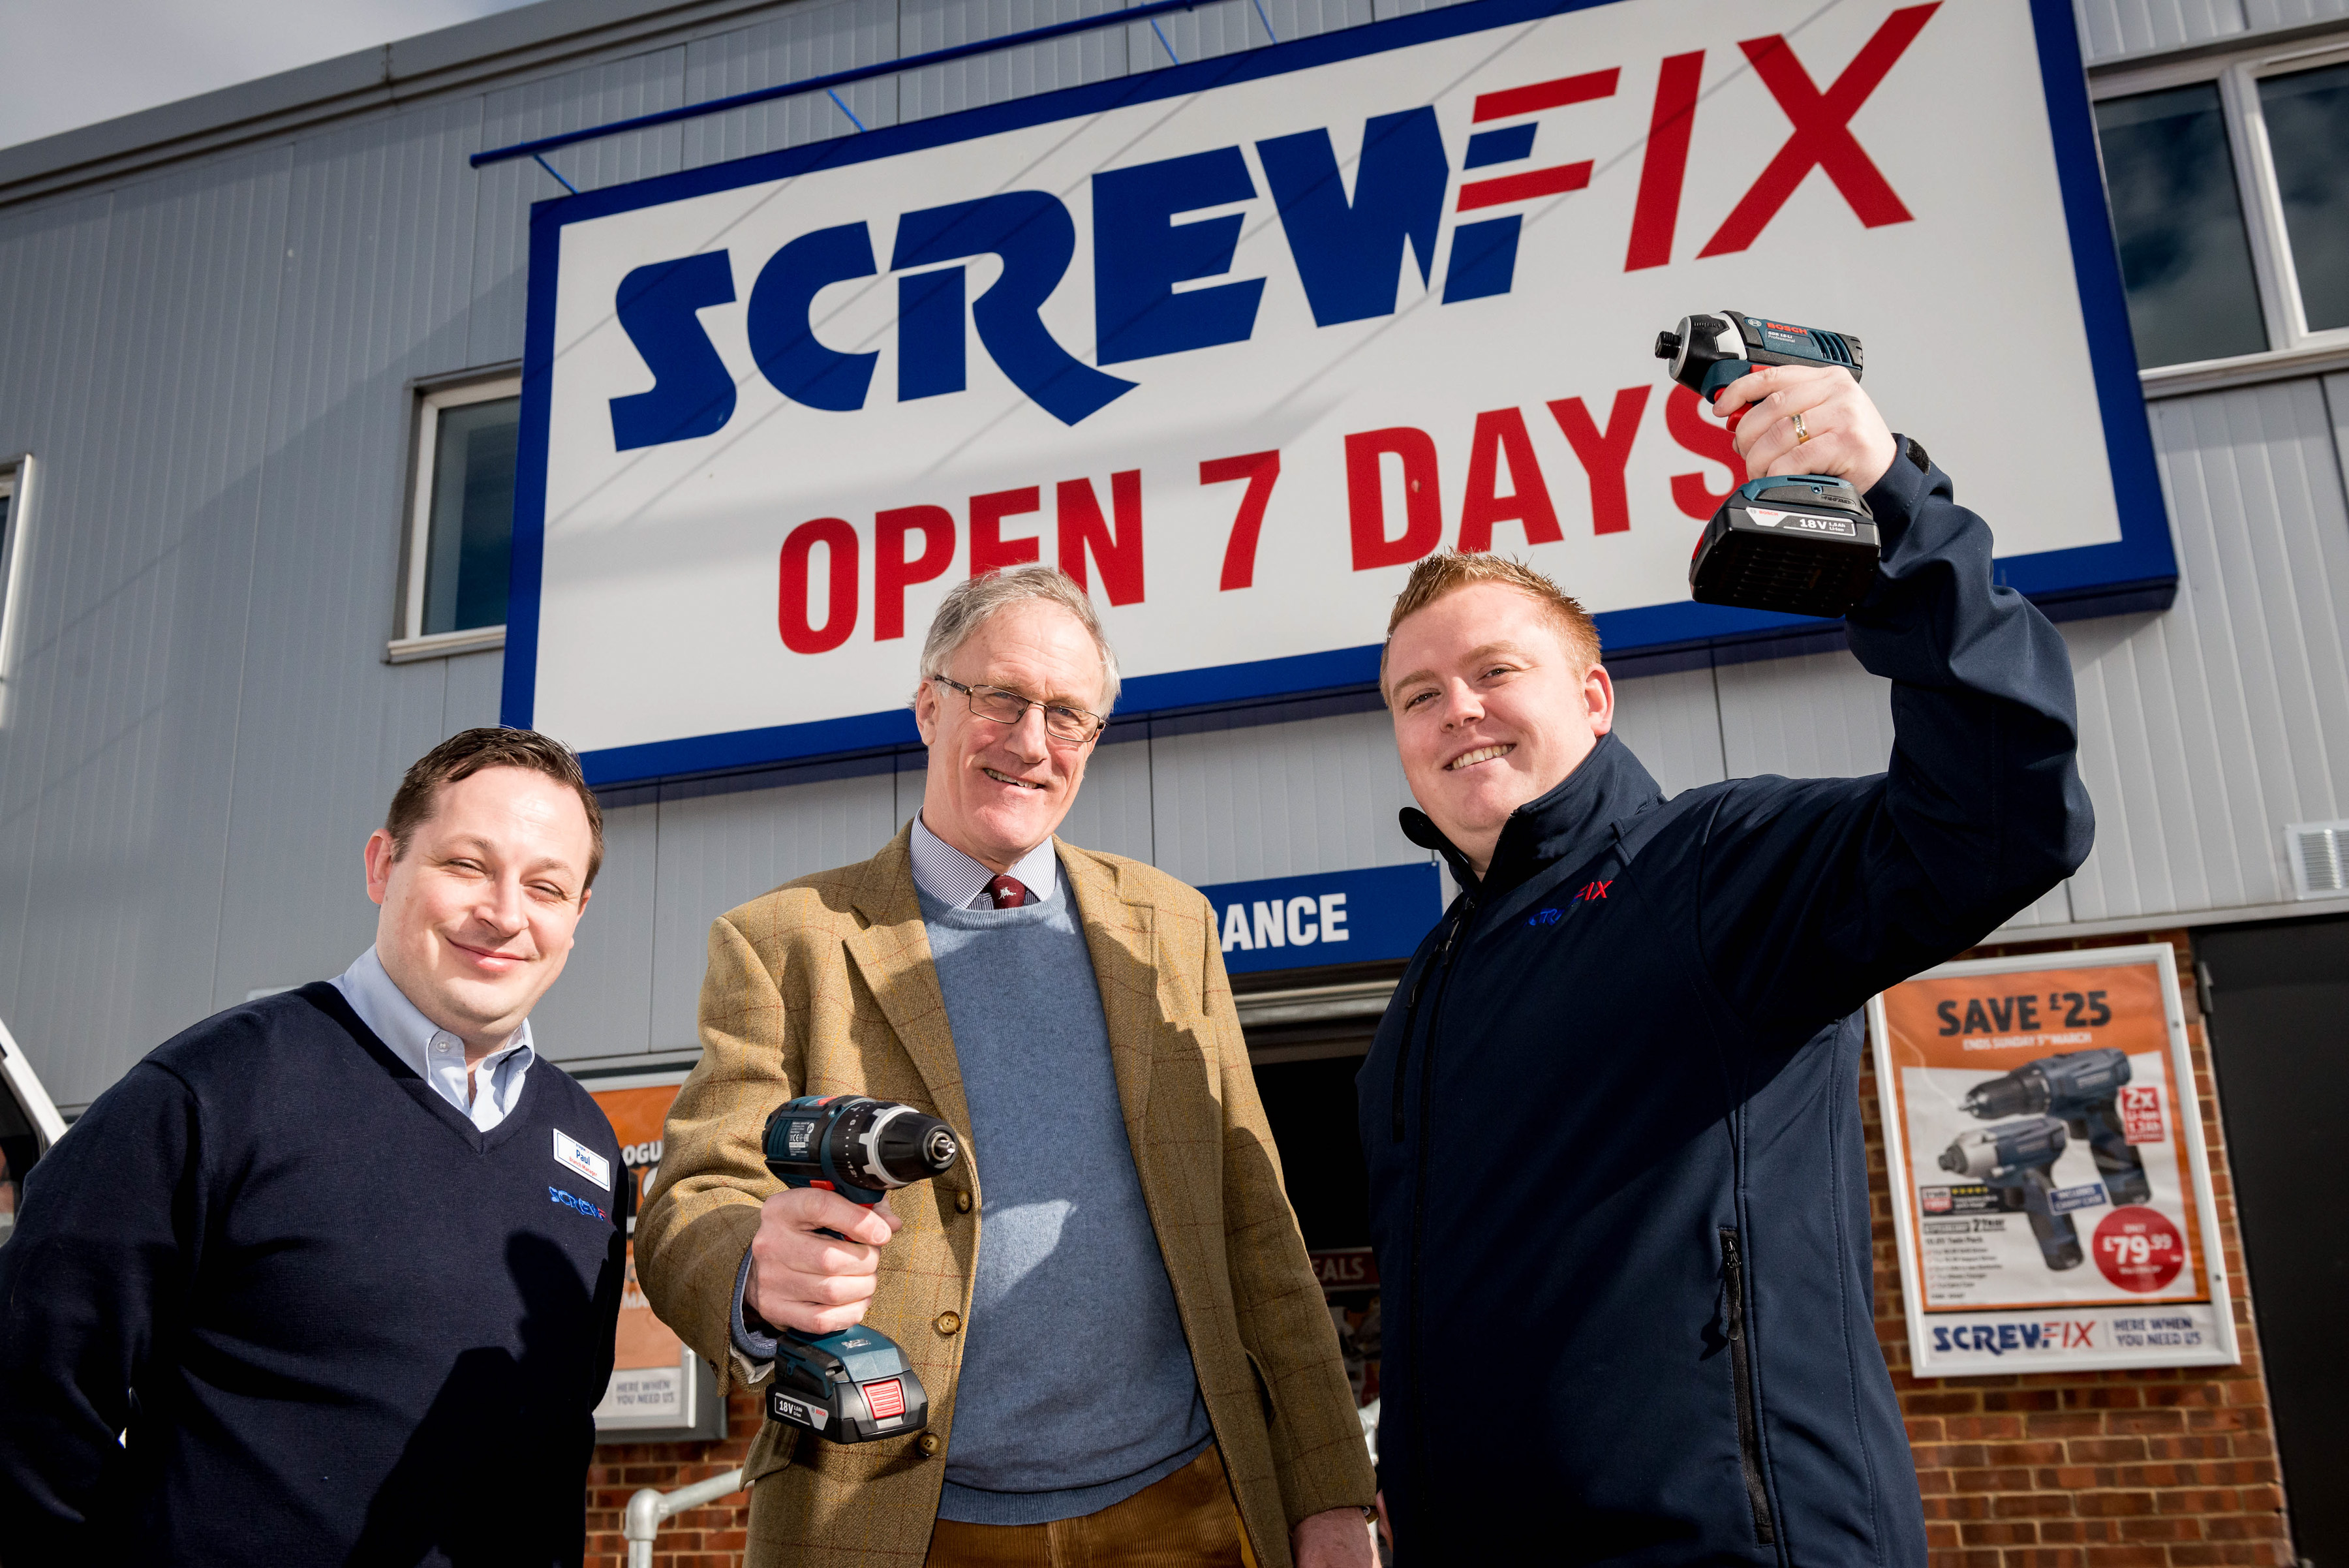 Sir Julian Brazier MP visits new Screwfix store